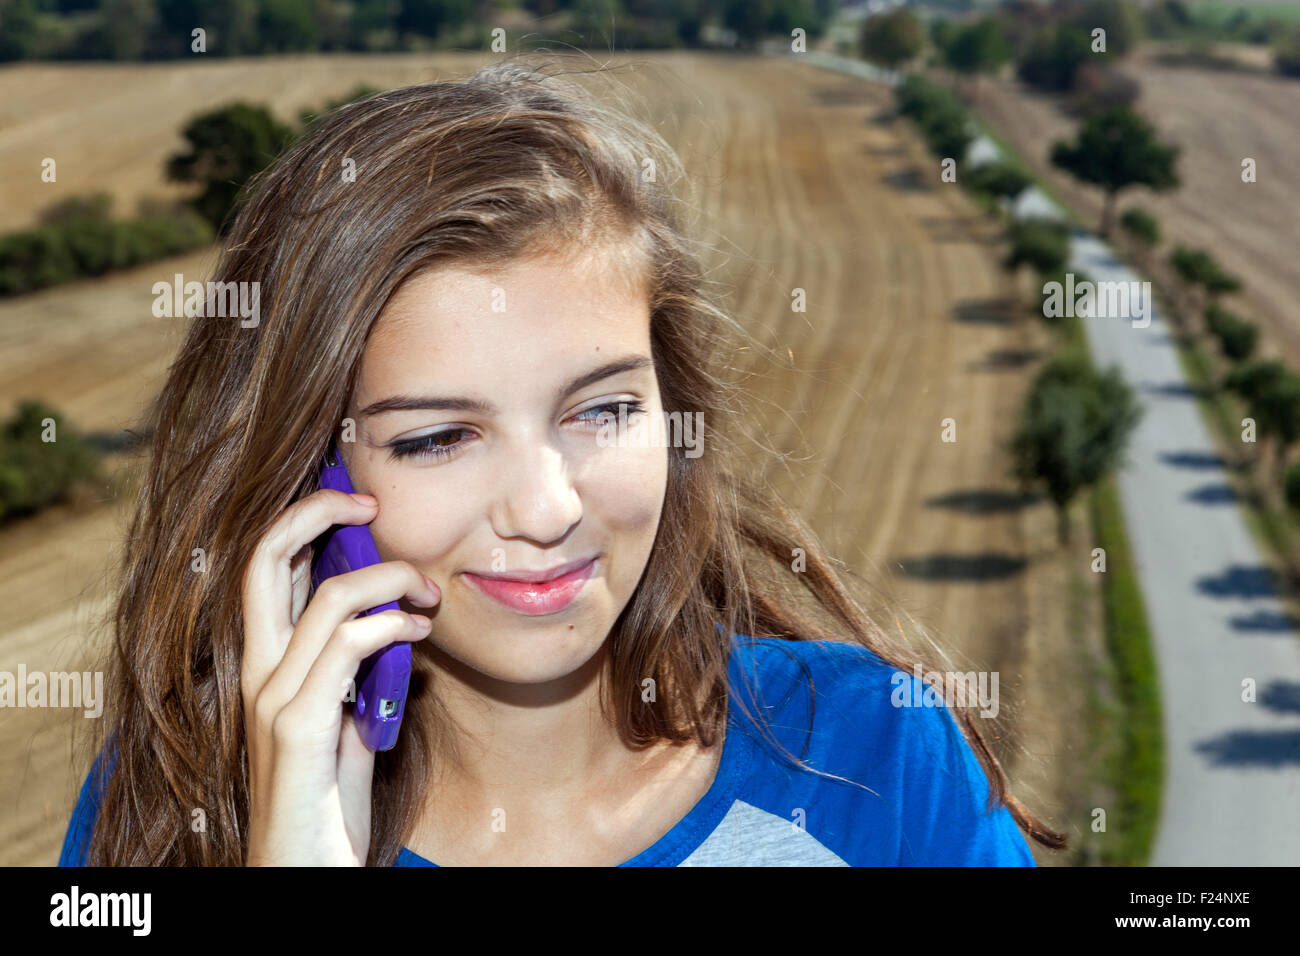 Adolescente smartphone móvil, chica llamada, sonrisa reír Foto de stock